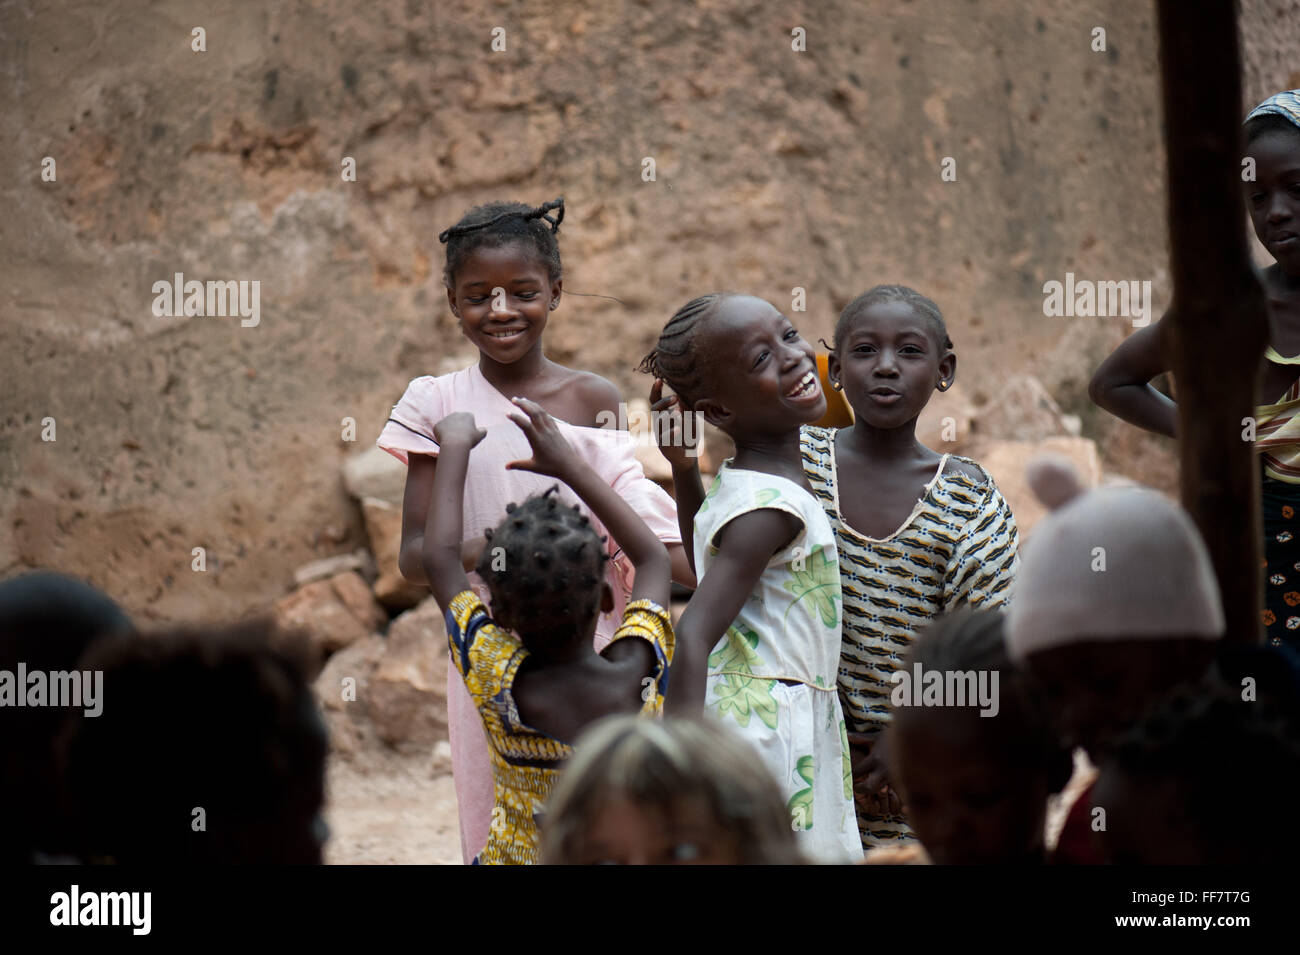 Mali, Afrika - Gruppe von schwarzen Kindern Spaß in Afrika Stockfoto